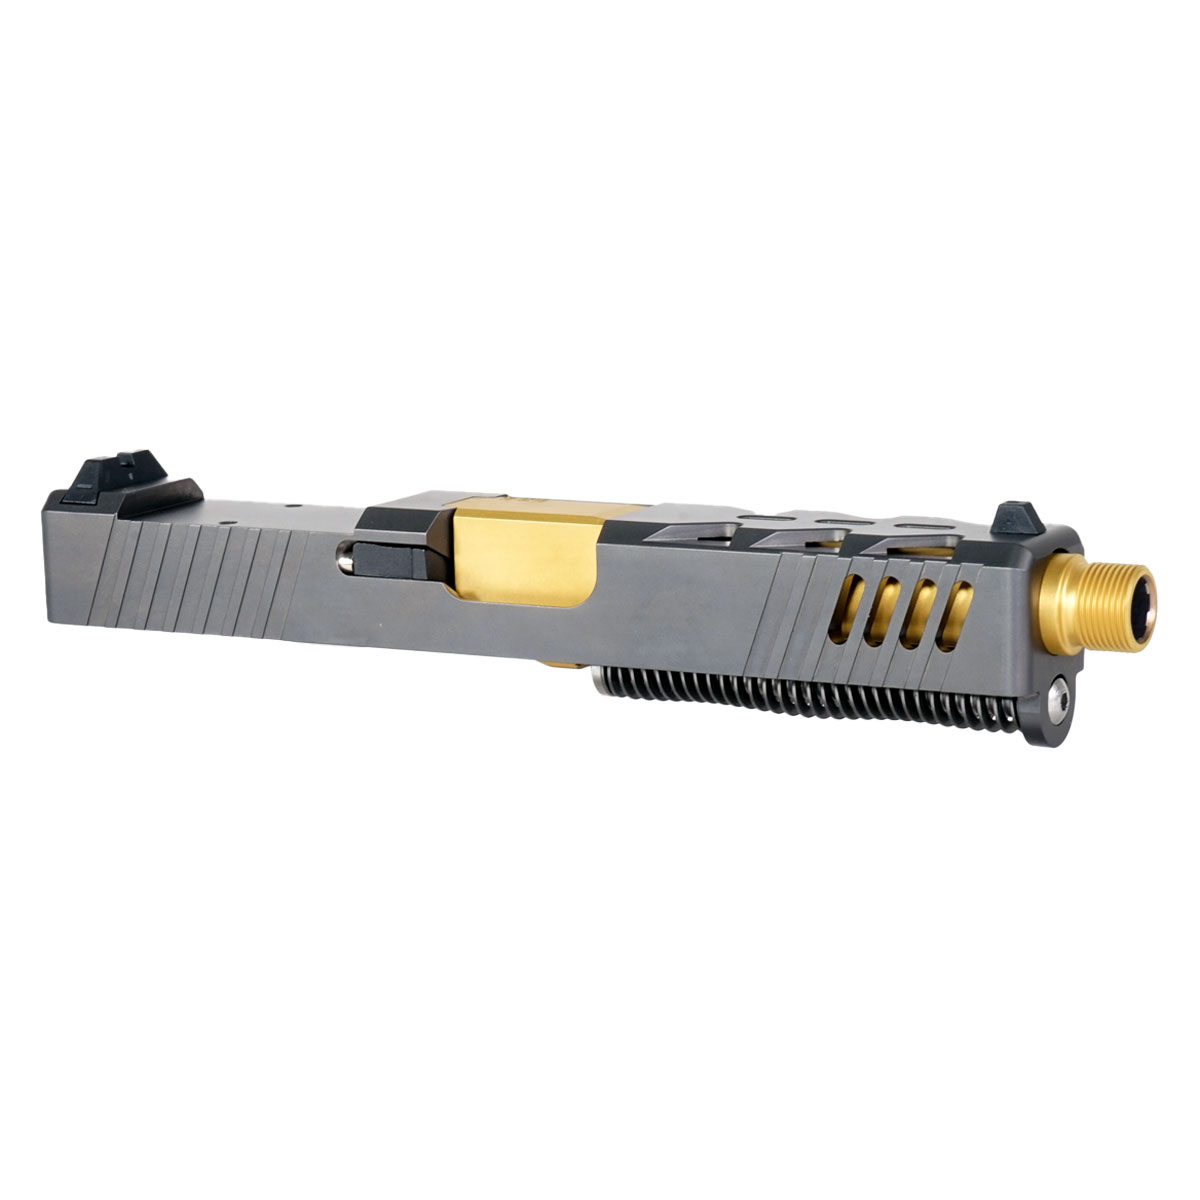 MMC 'The Rickster' 9mm Complete Slide Kit - Glock 19 Gen 1-3 Compatible